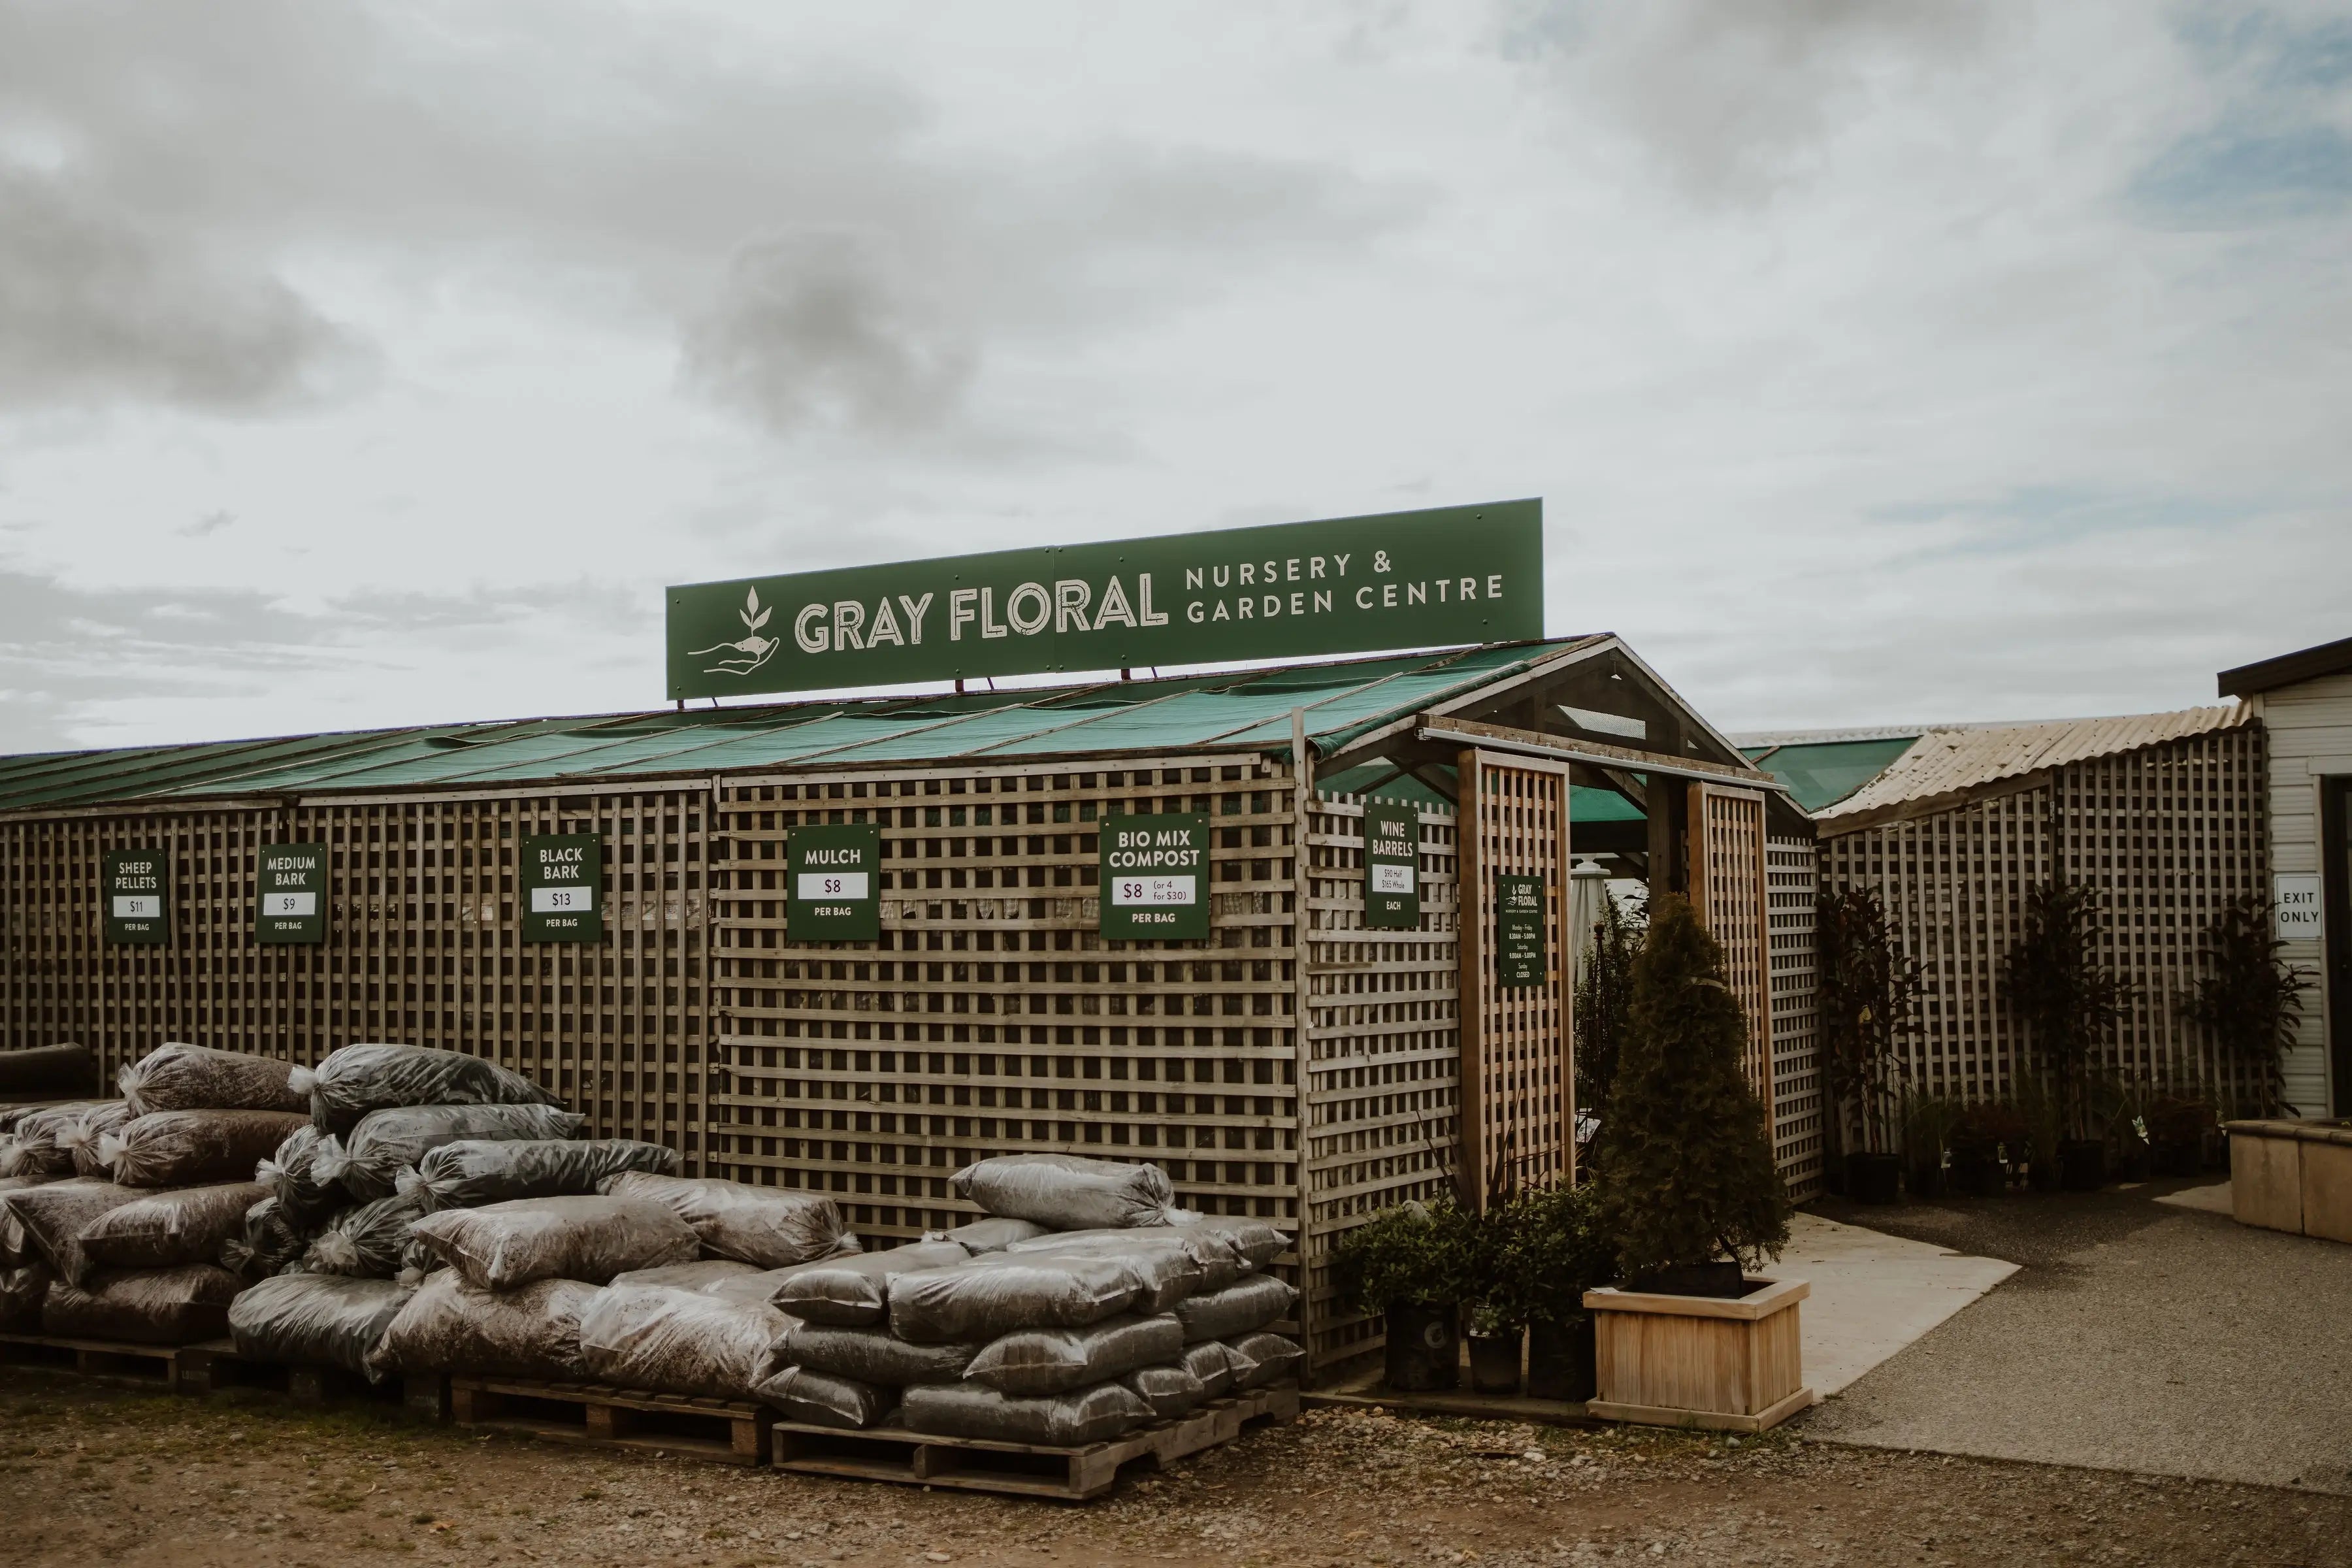 Gray Floral  Nursery and Garden Centre in Marlborough, NZ